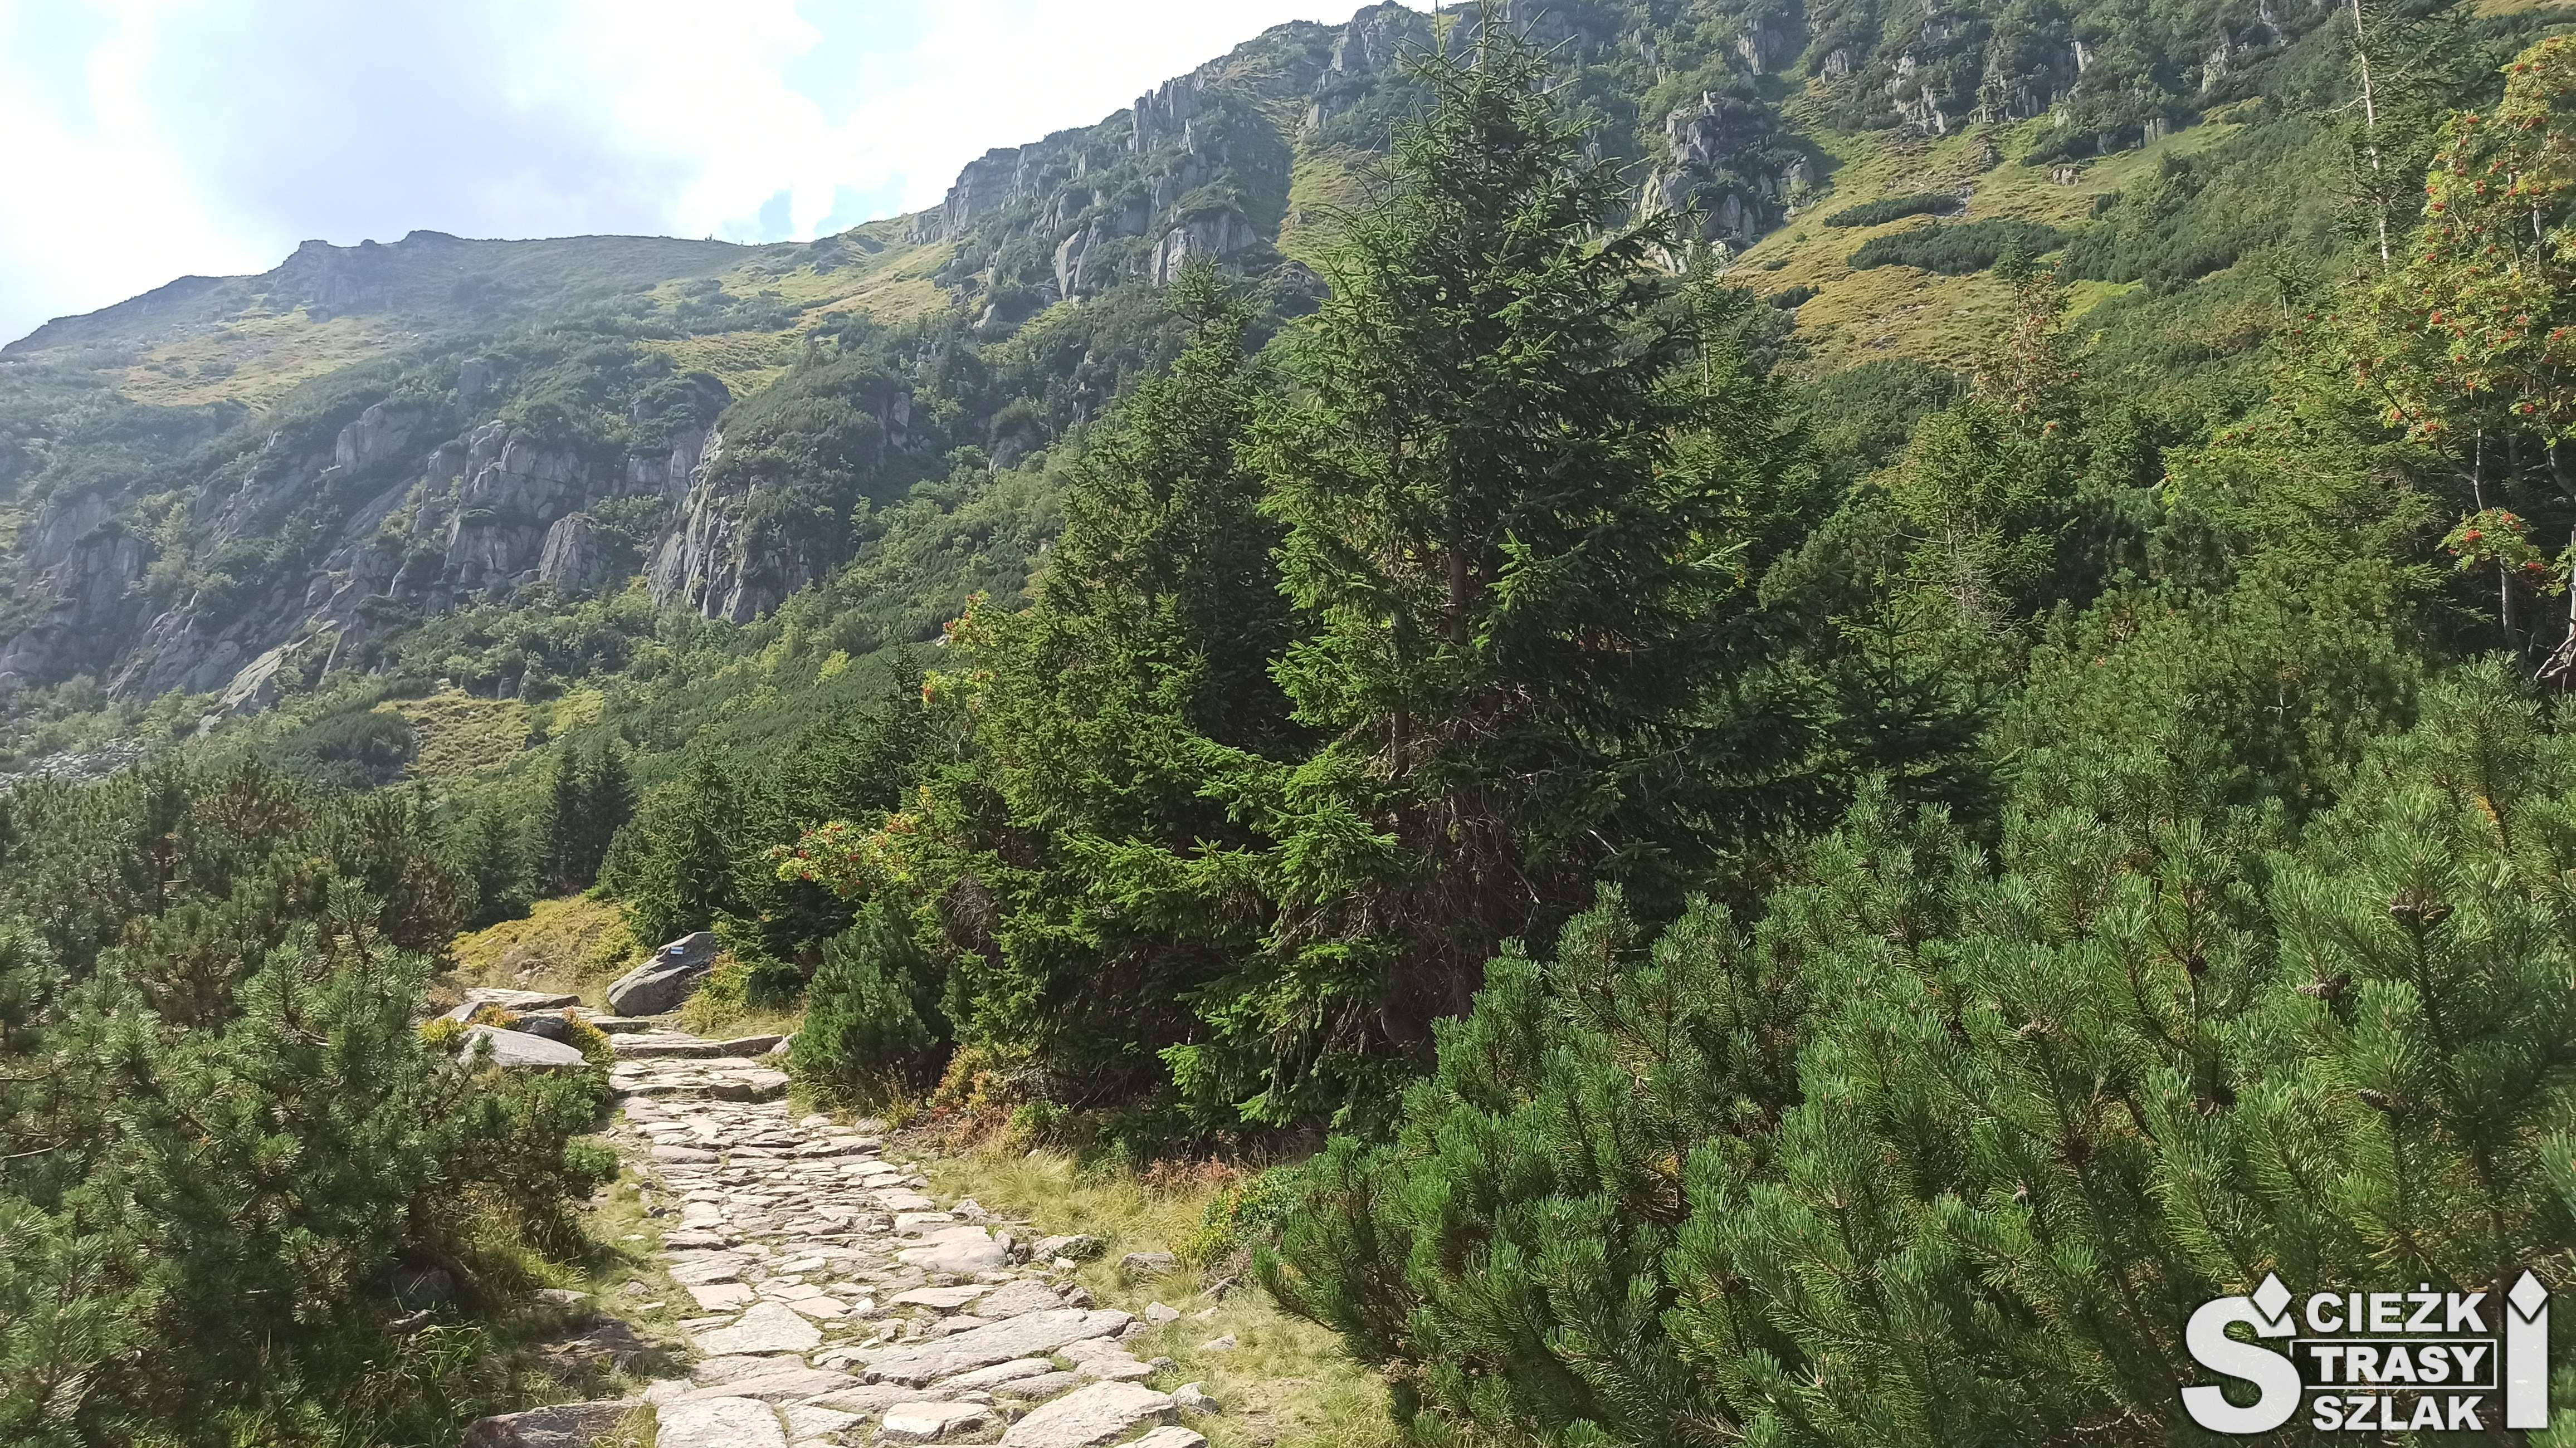 Wąska ścieżka z kamieni przy górskim zboczu porośniętym roślinami z widokiem na Karkonosze